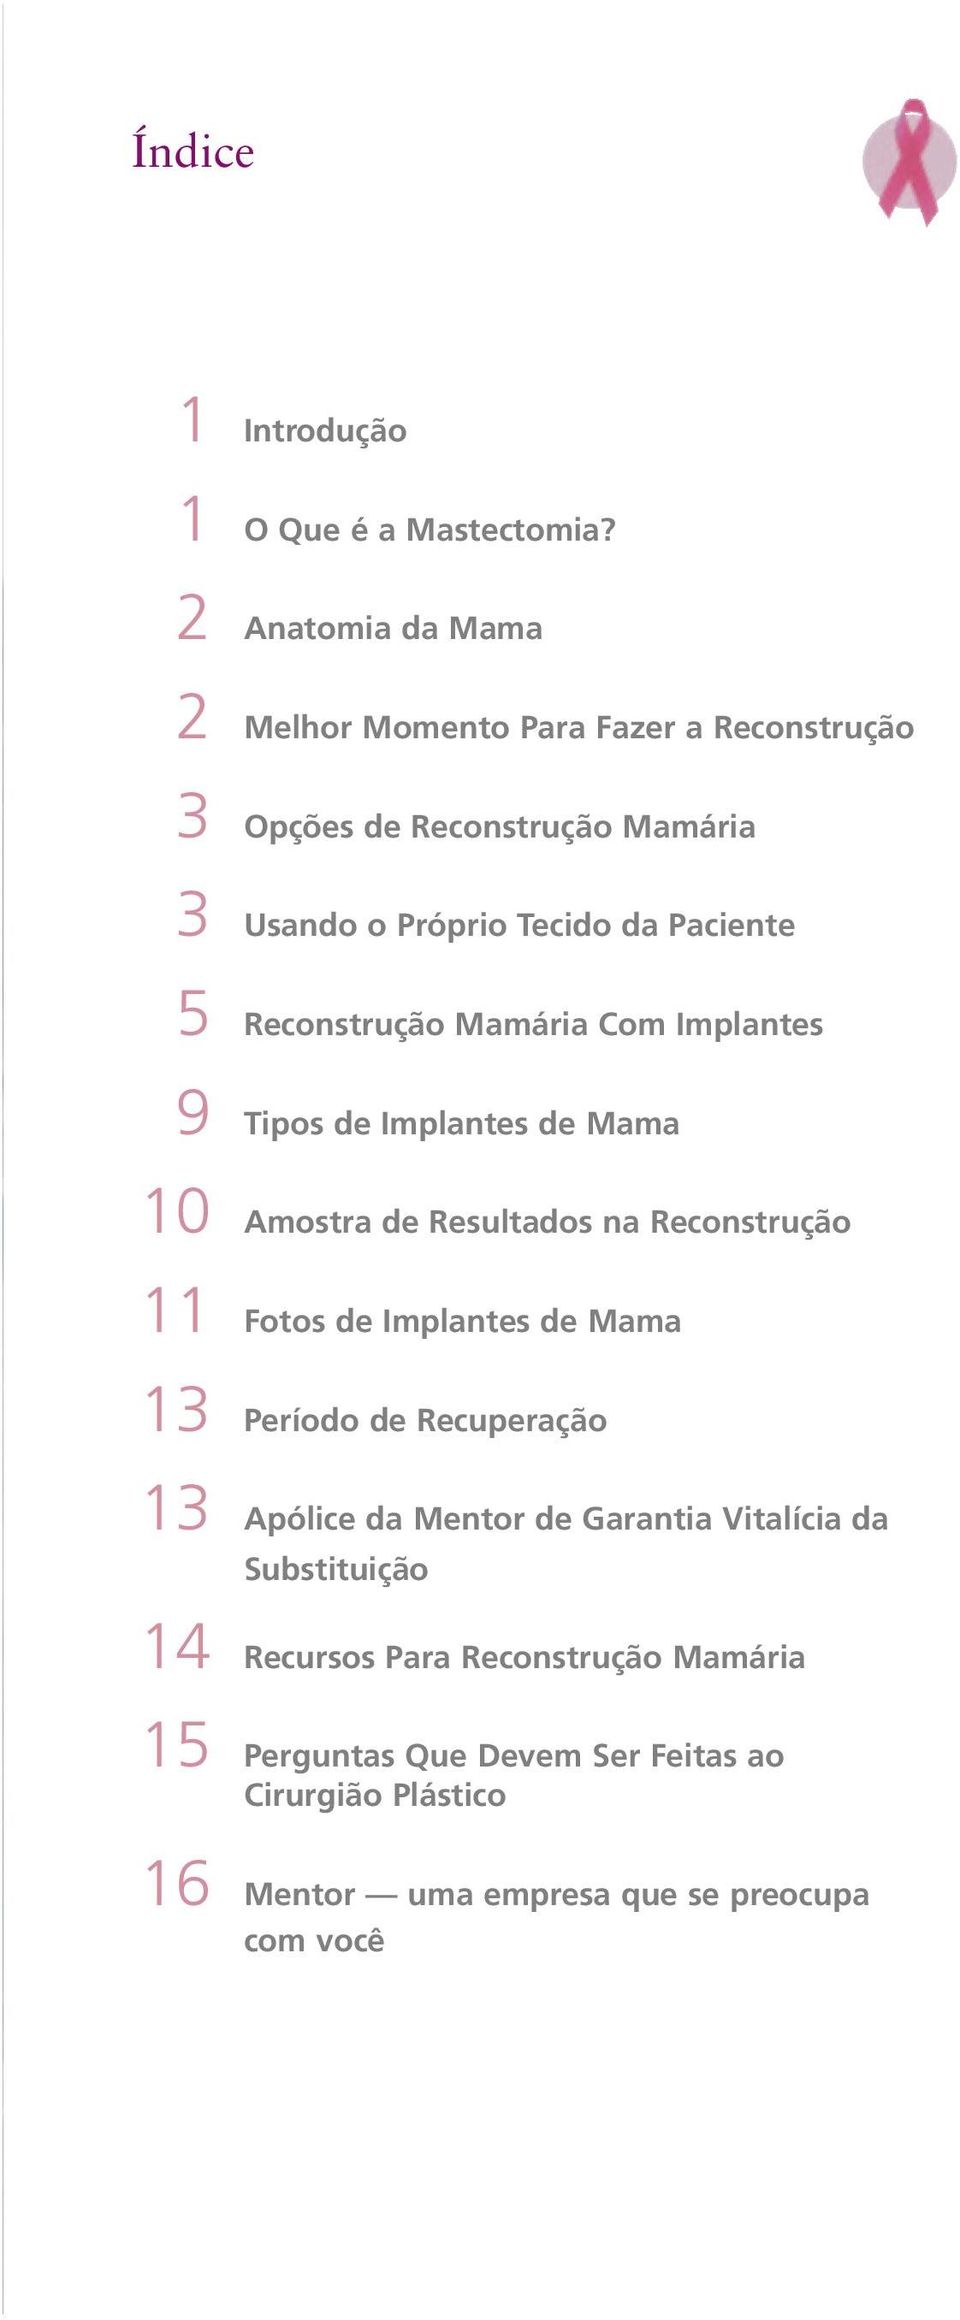 Reconstrução Mamária Com Implantes 9 Tipos de Implantes de Mama 10 Amostra de Resultados na Reconstrução 11 Fotos de Implantes de Mama